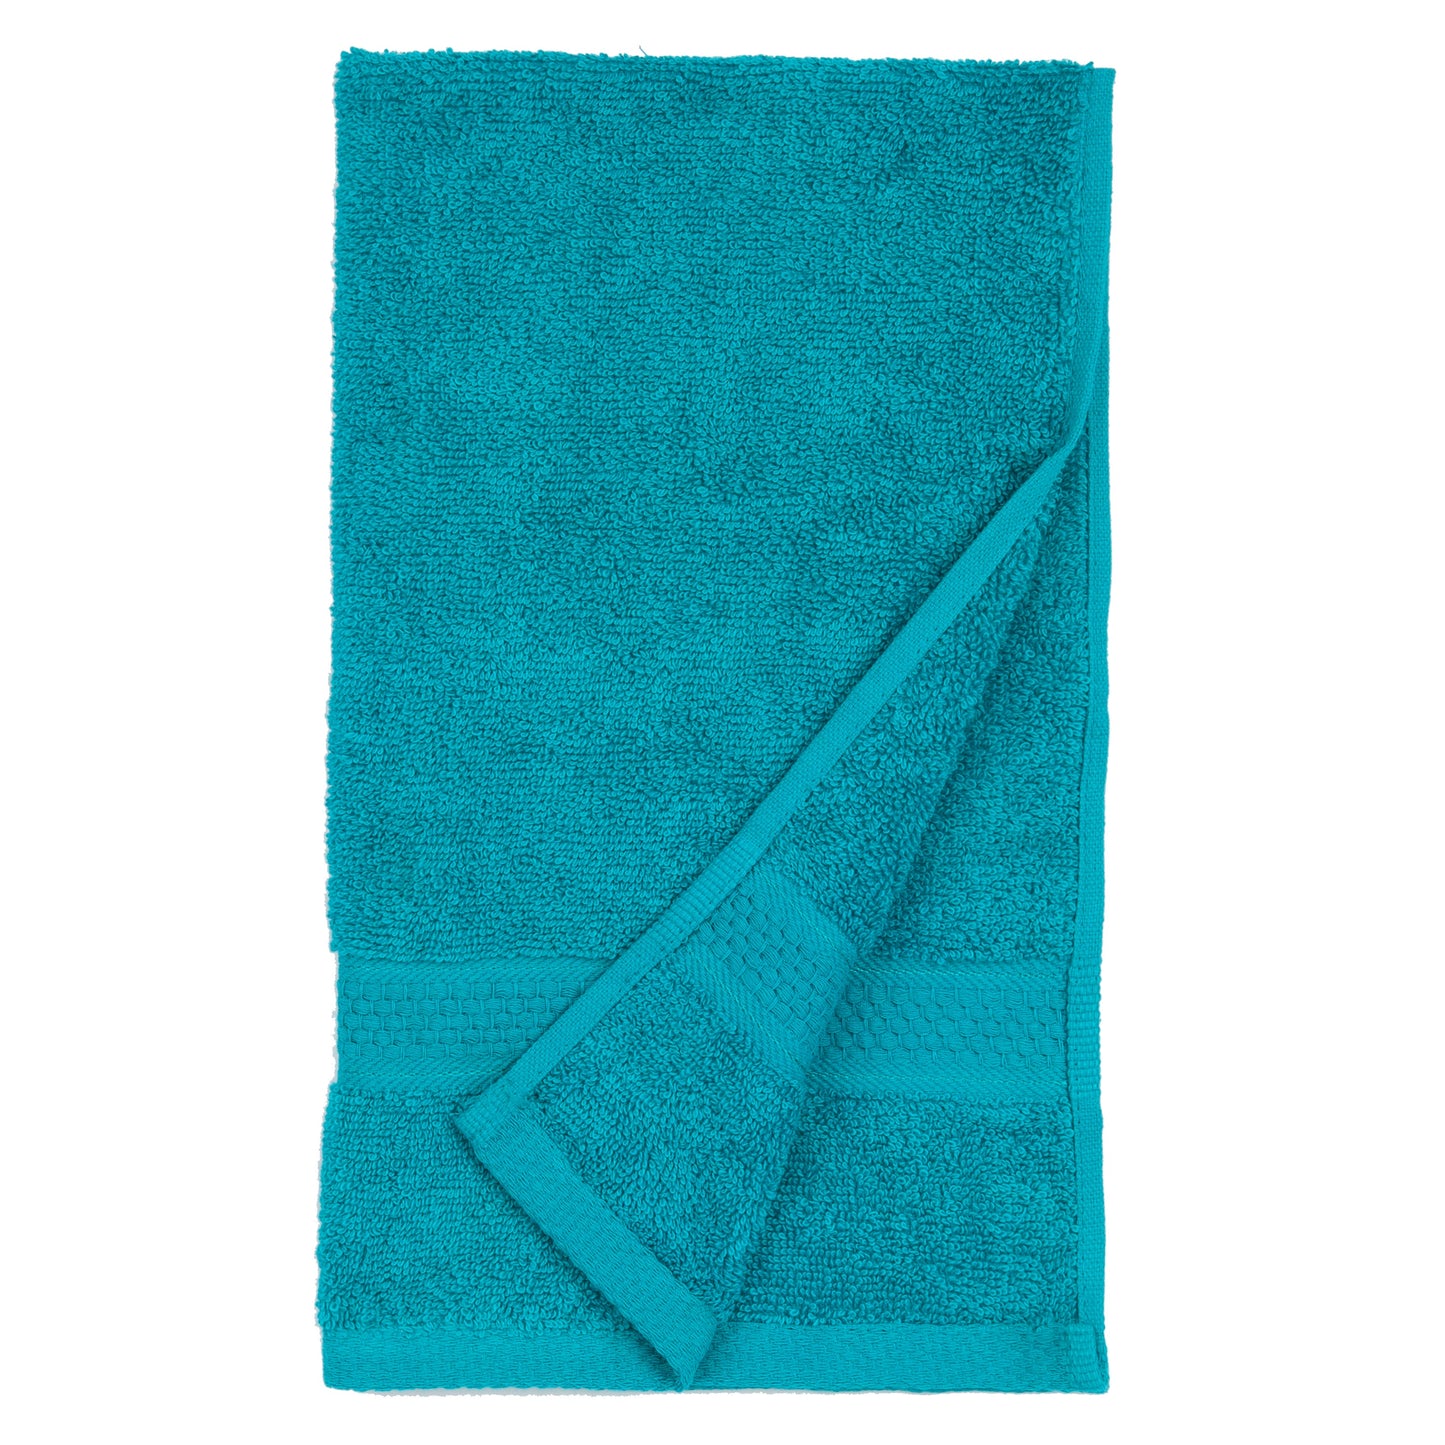 American Dawn | Jumbo 16X28 Inch Teal Salon Towel